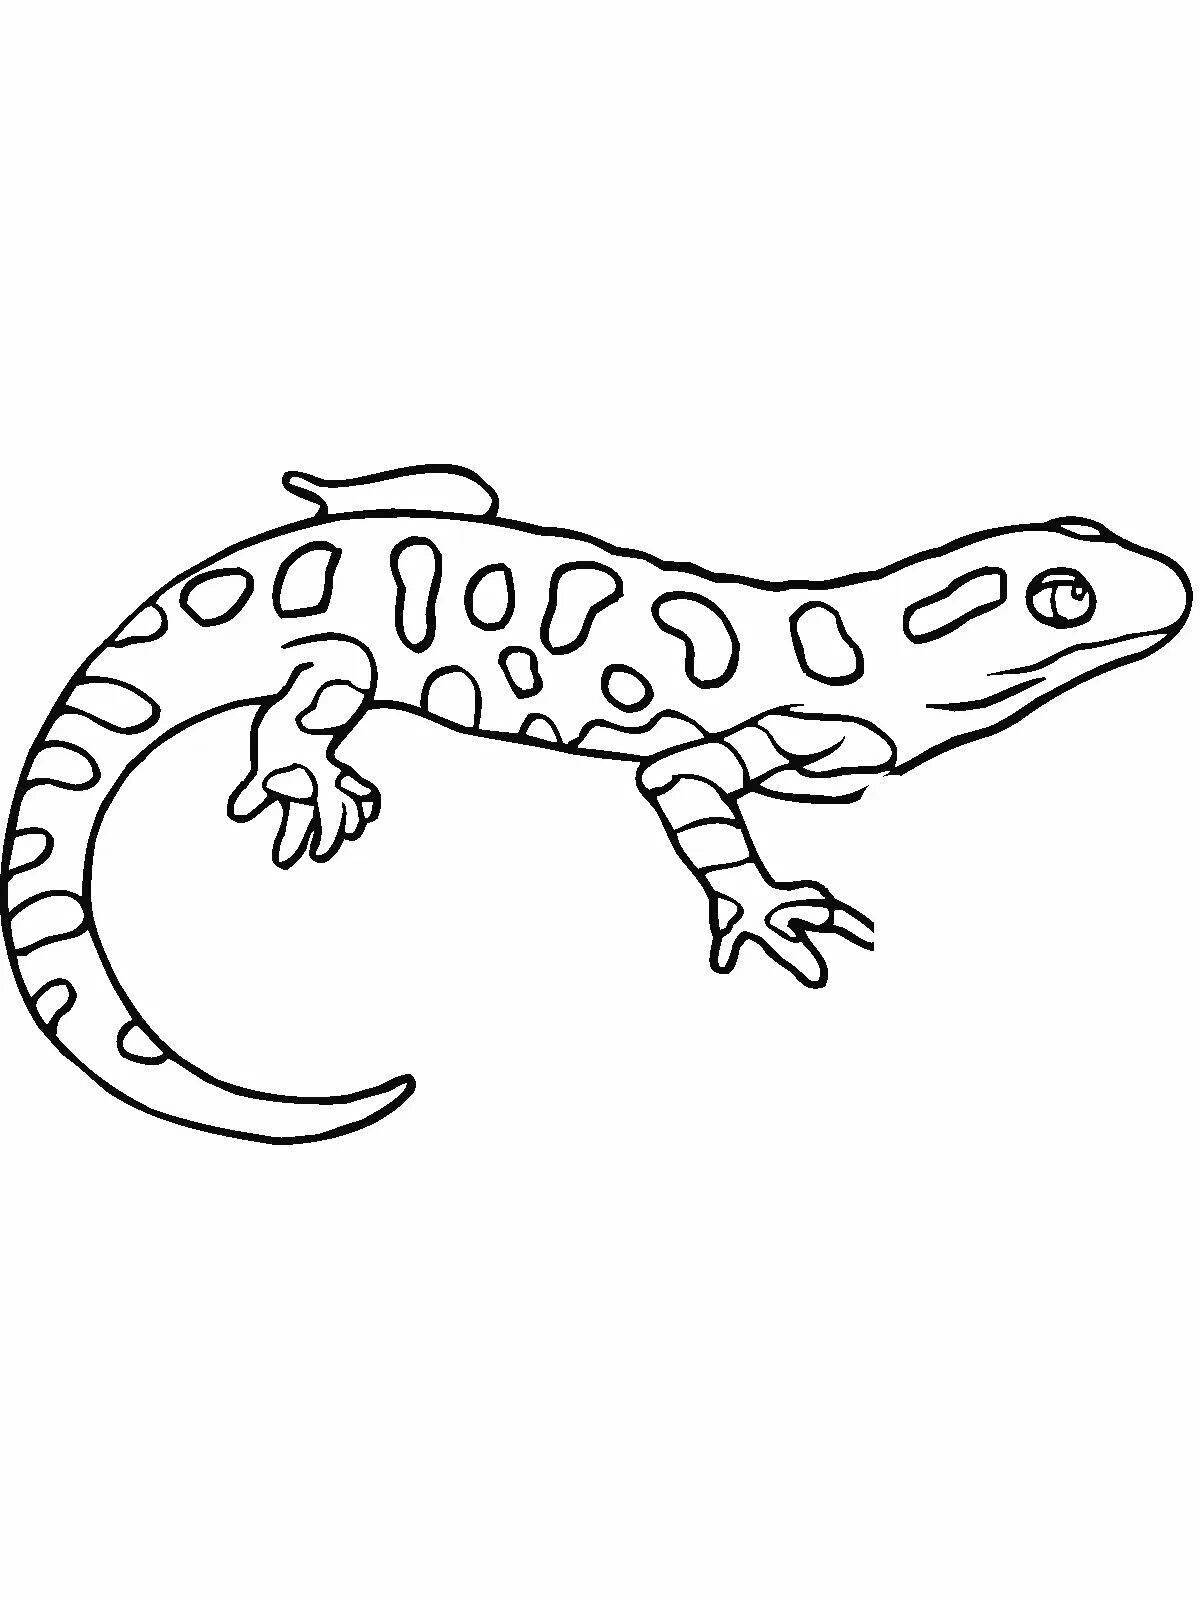 Charming salamander coloring book